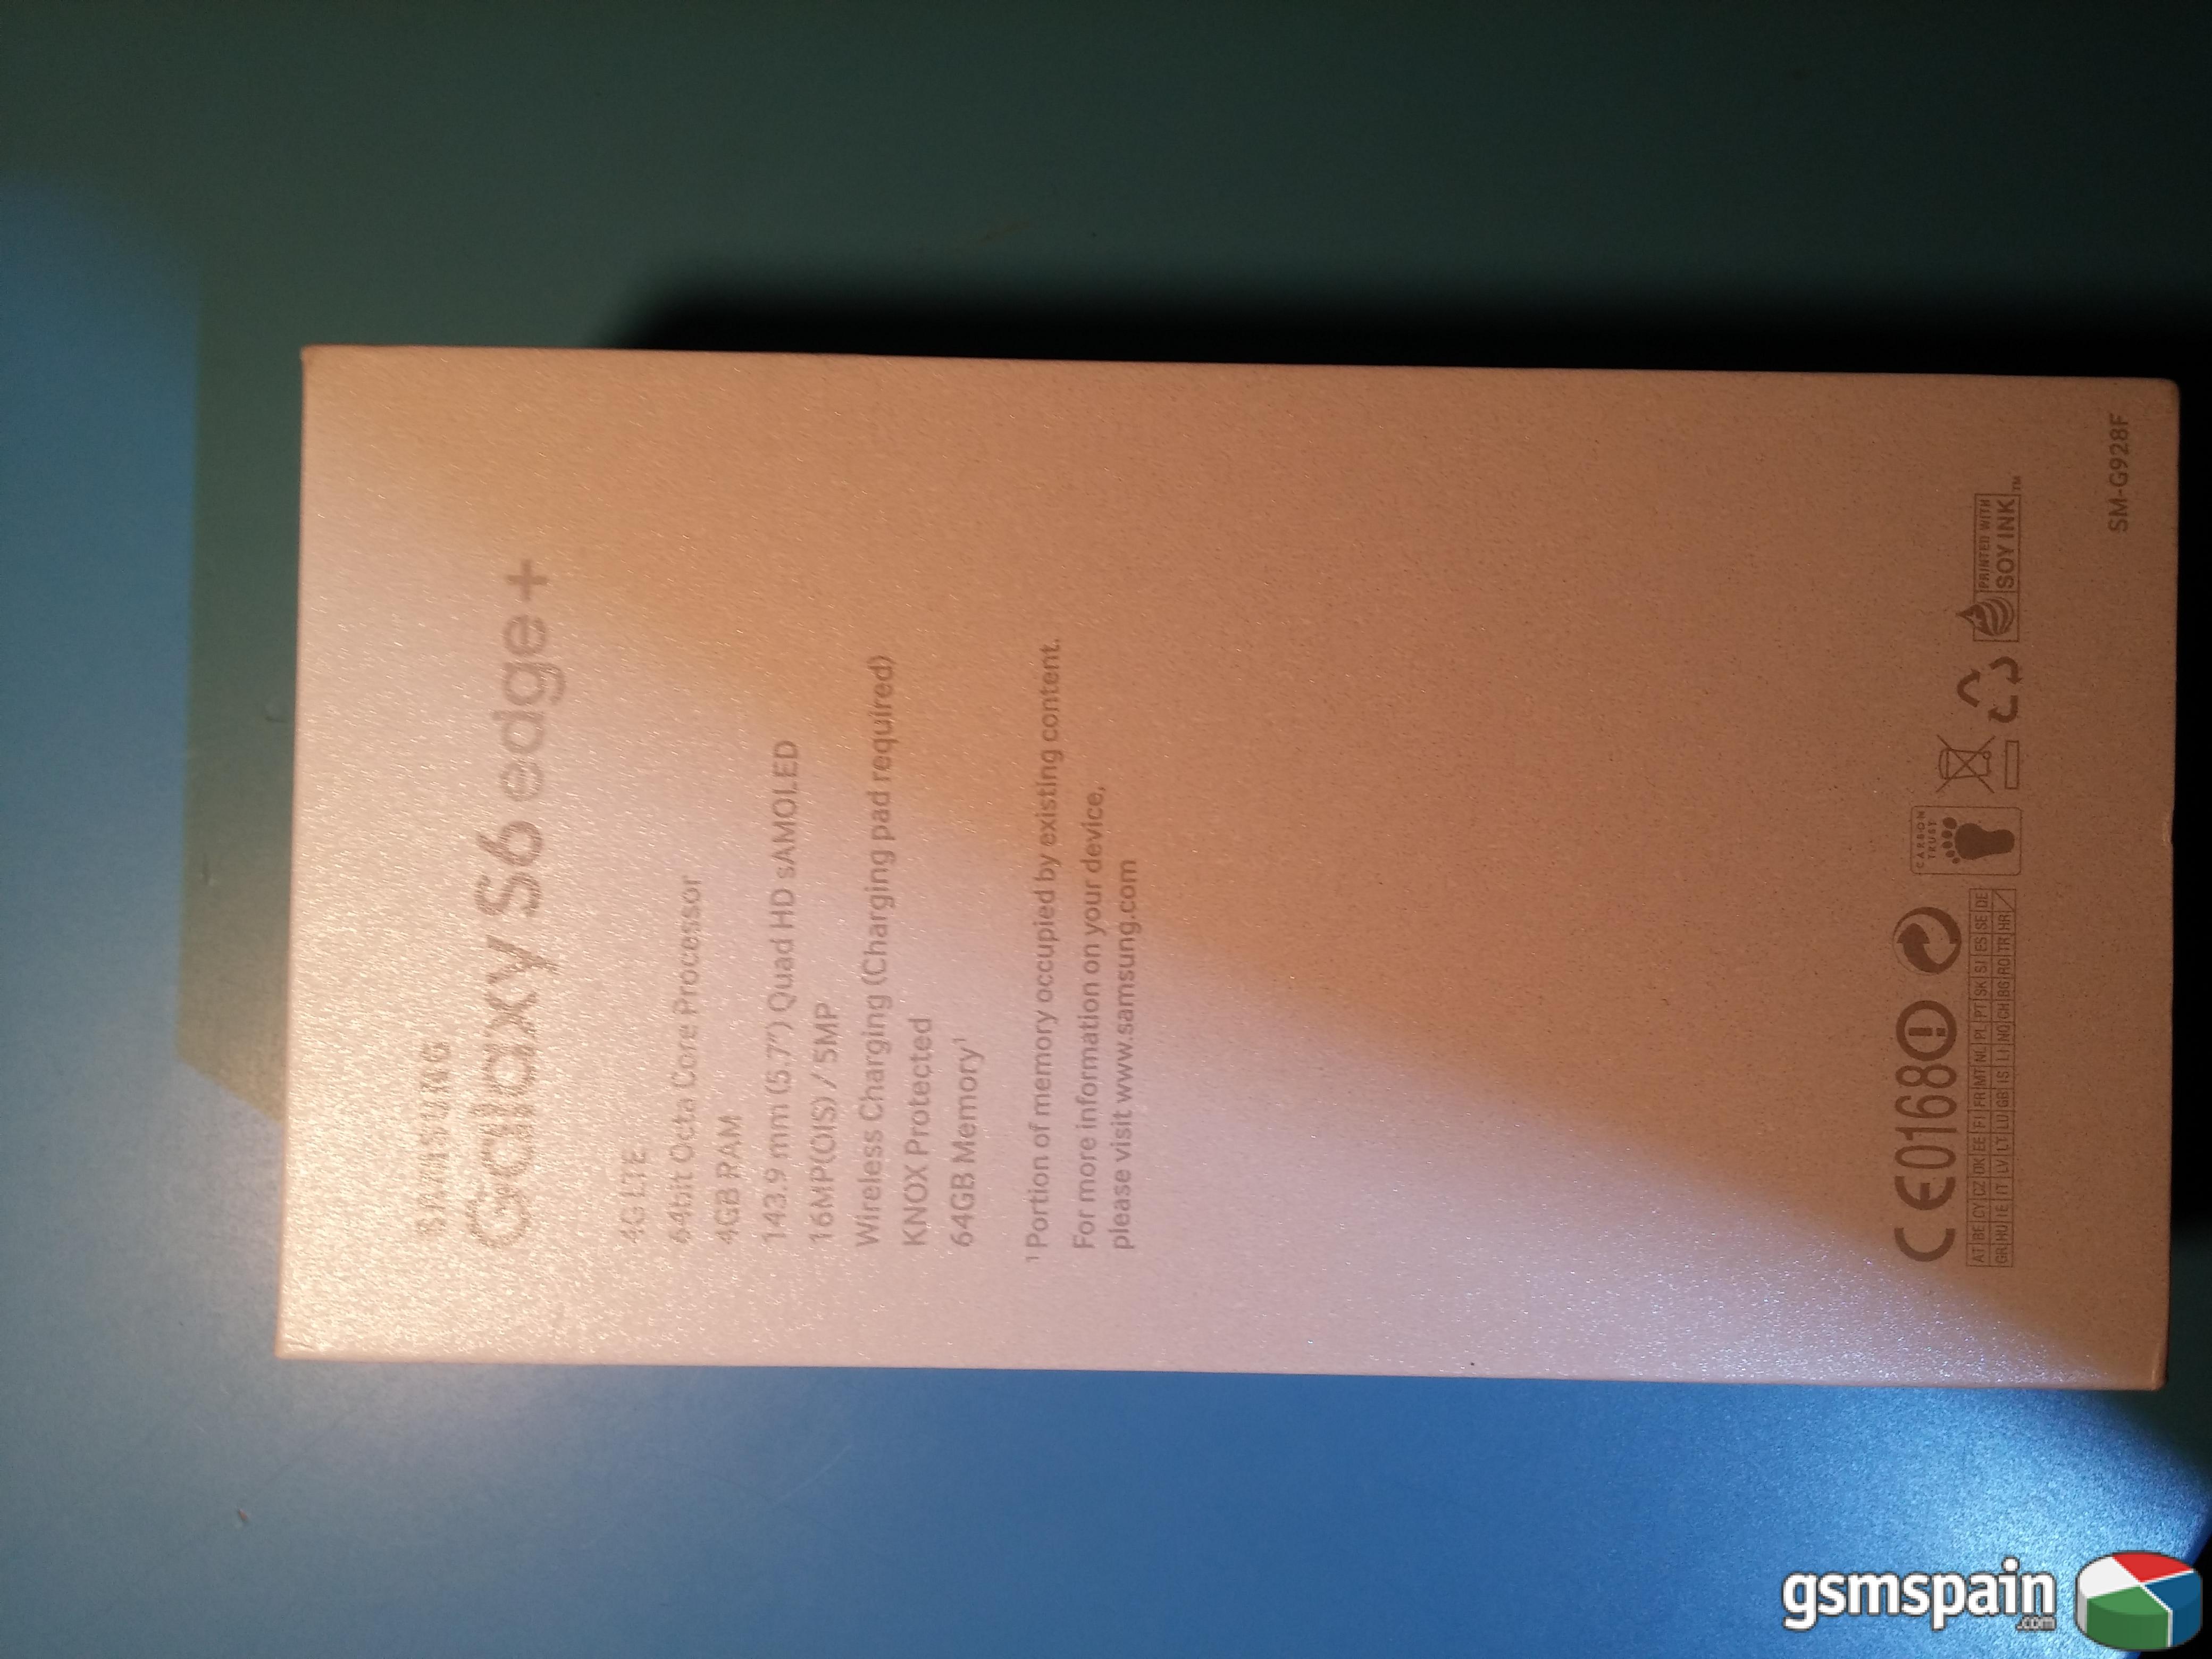 [VENDO] Samsung Galaxy S6 Edge "Plus" 64gb Gold PRECINTADO Y GARANTA 2 AOS